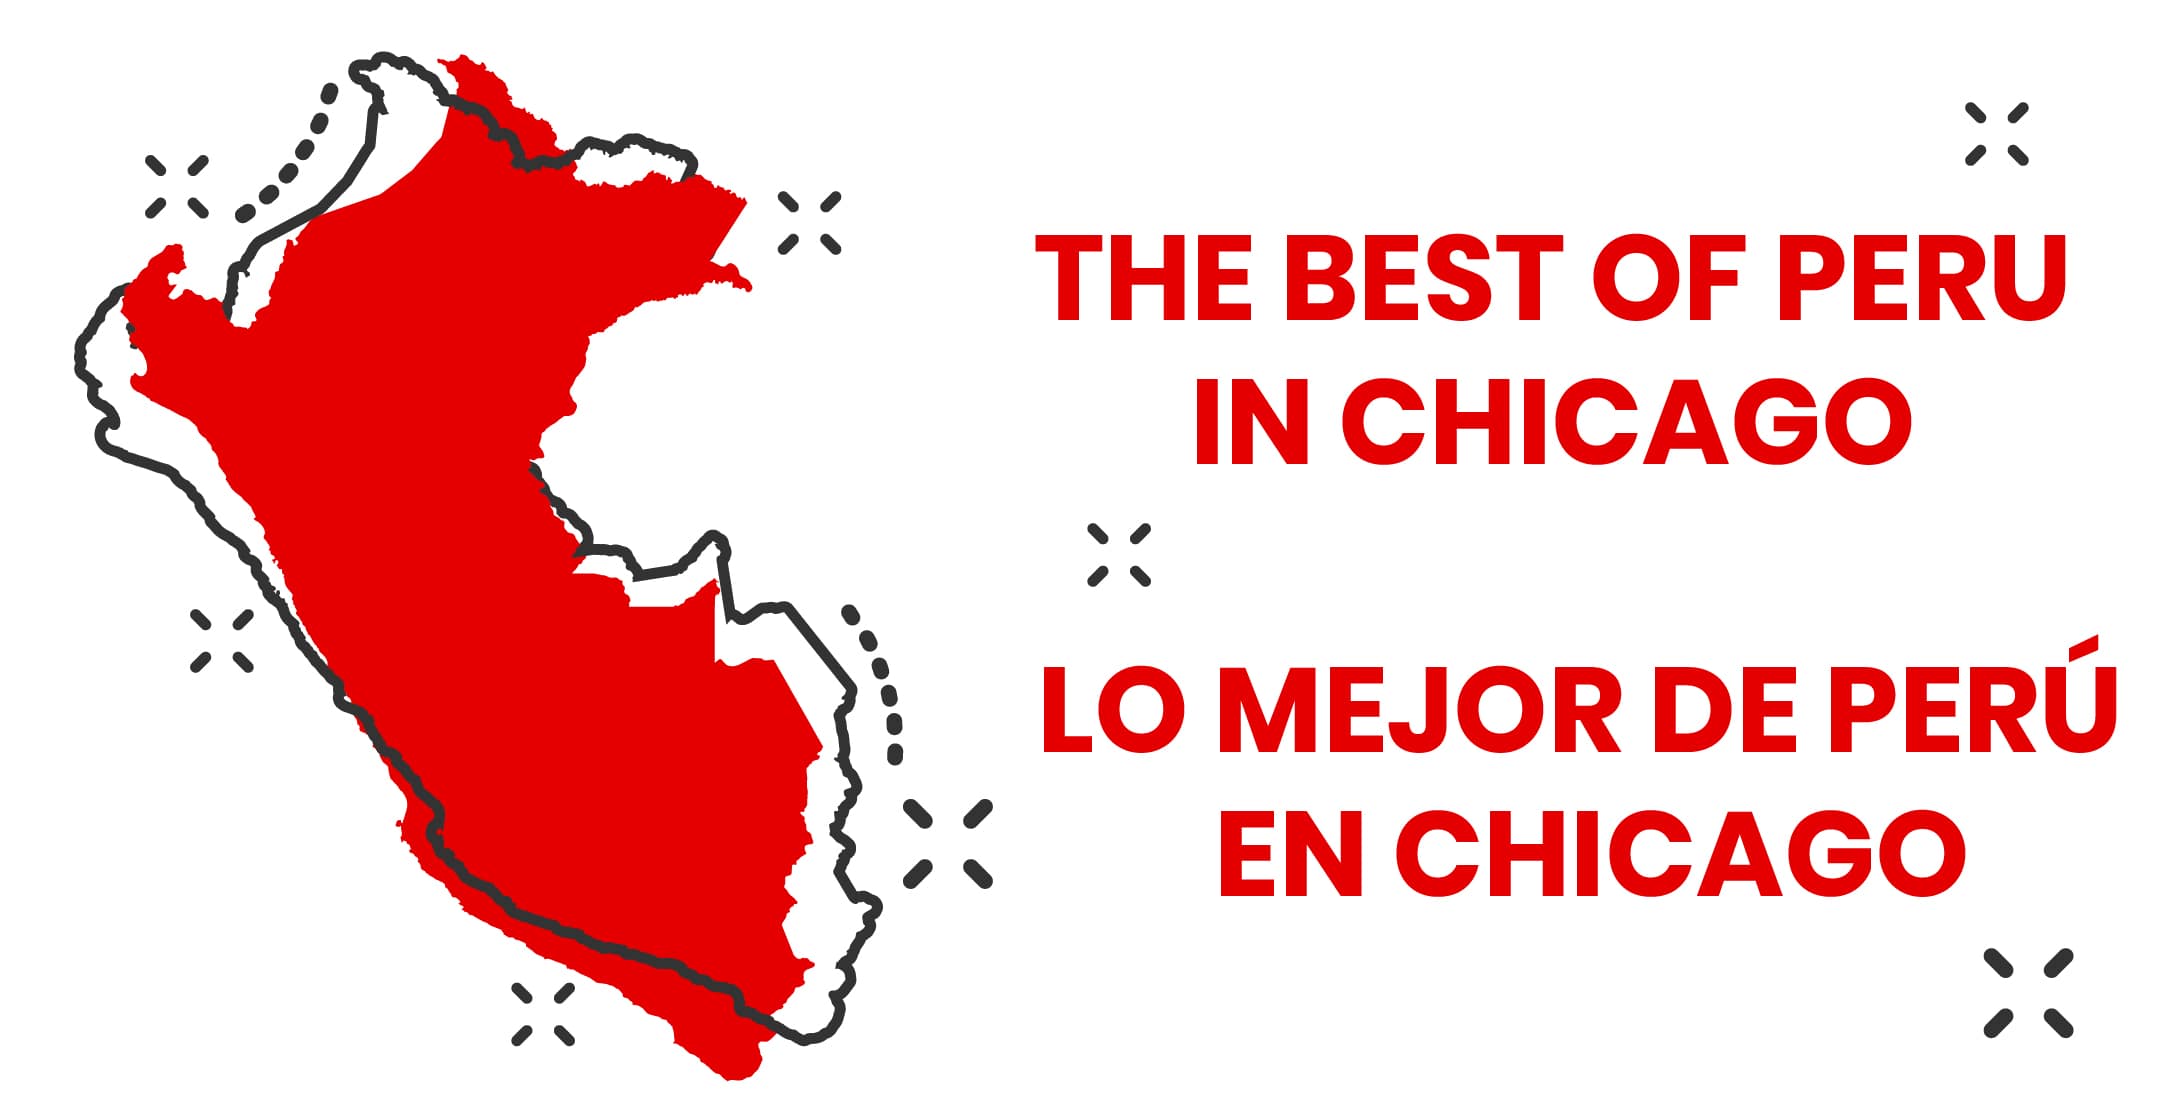 BEST OF PERU IN CHICAGO